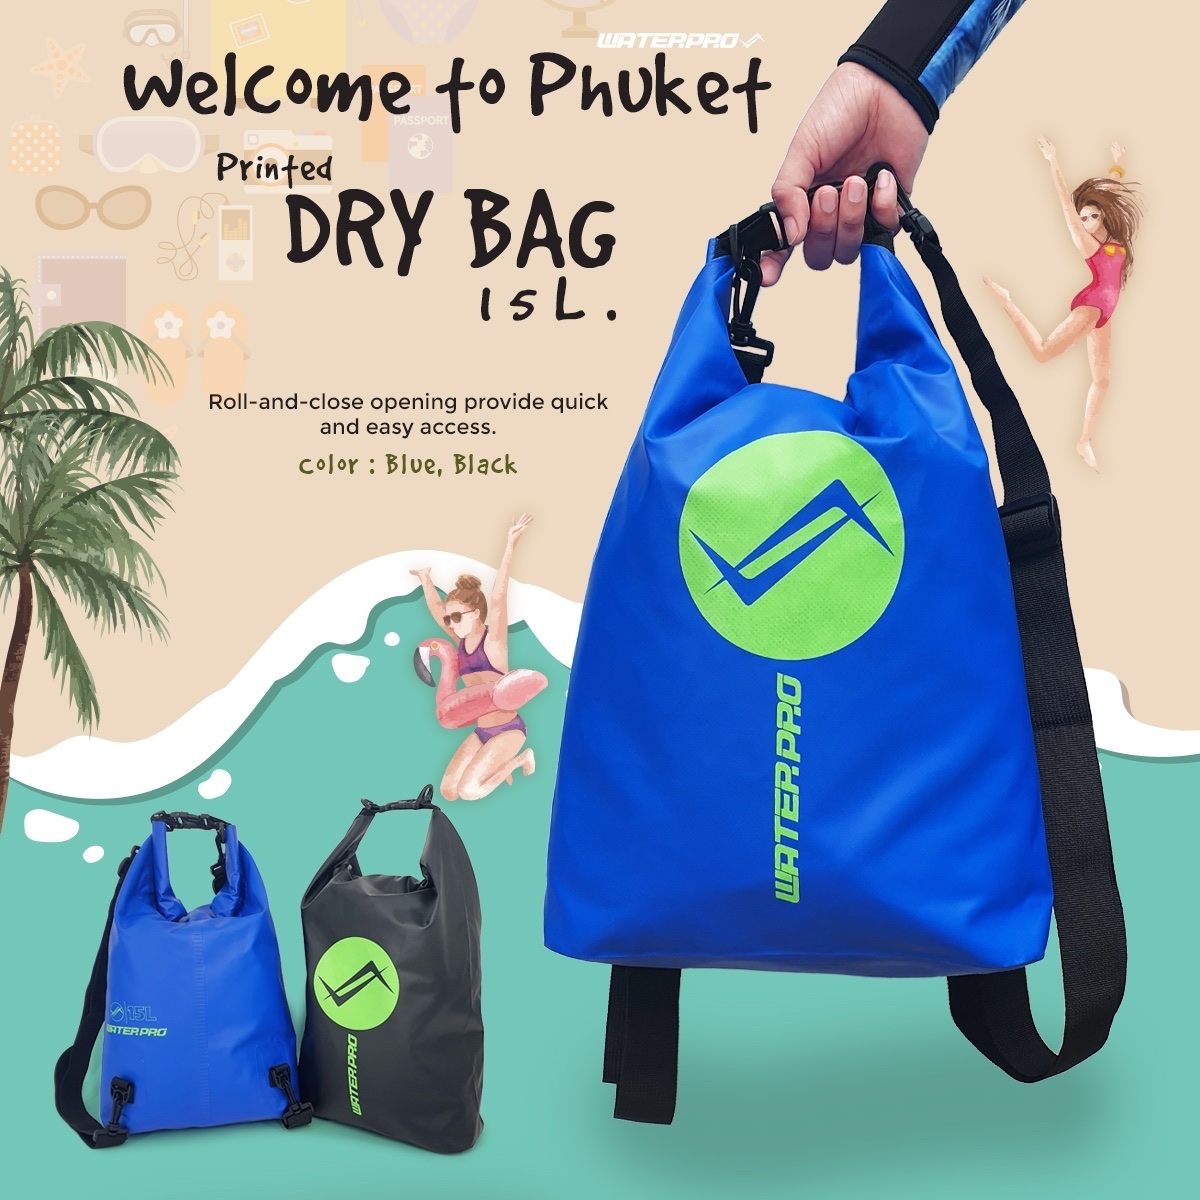 กระเป๋ากันน้ำ - WATER PRO PRINTED DRY BAG 15L